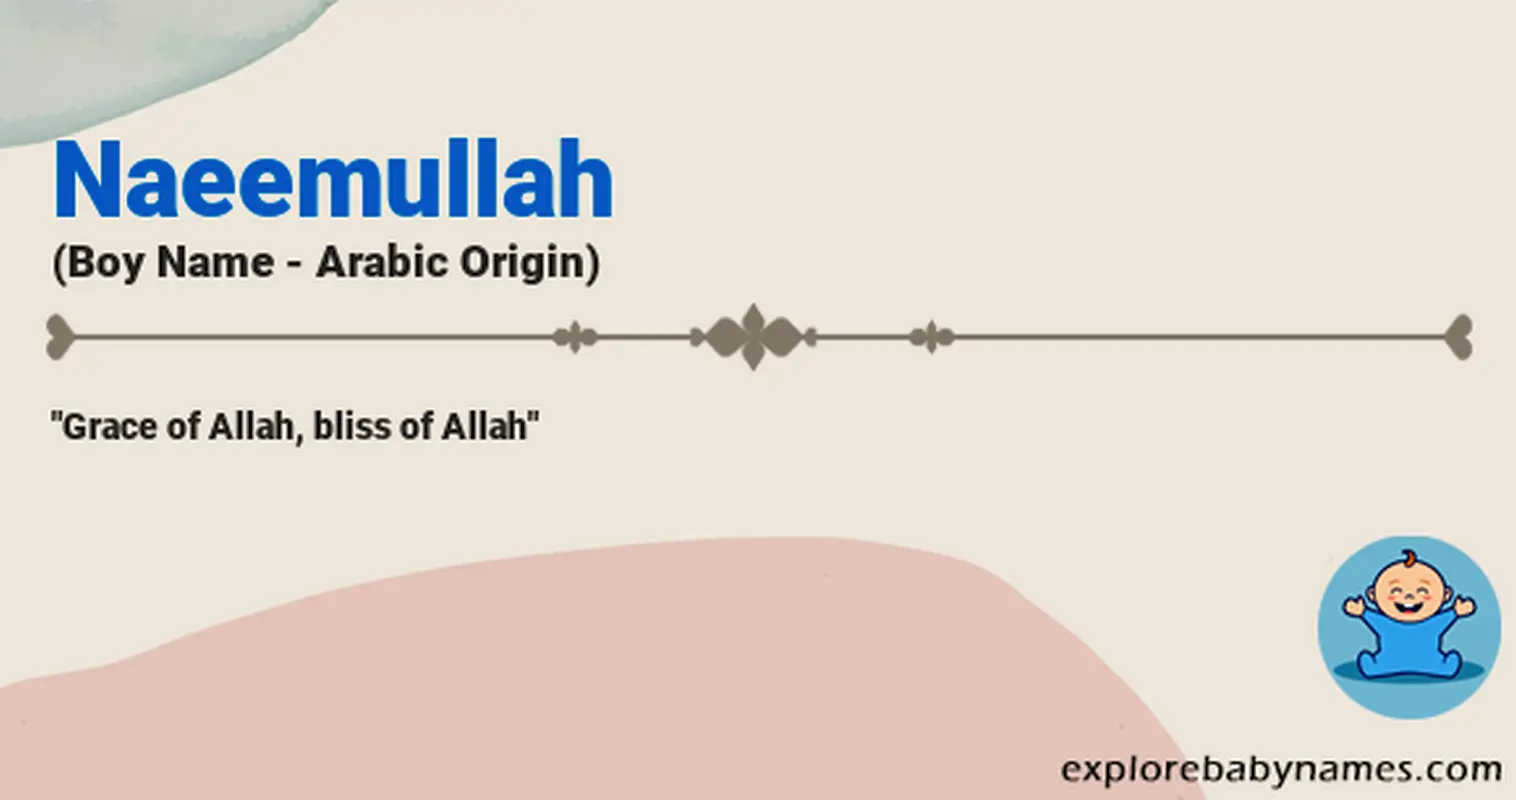 Meaning of Naeemullah